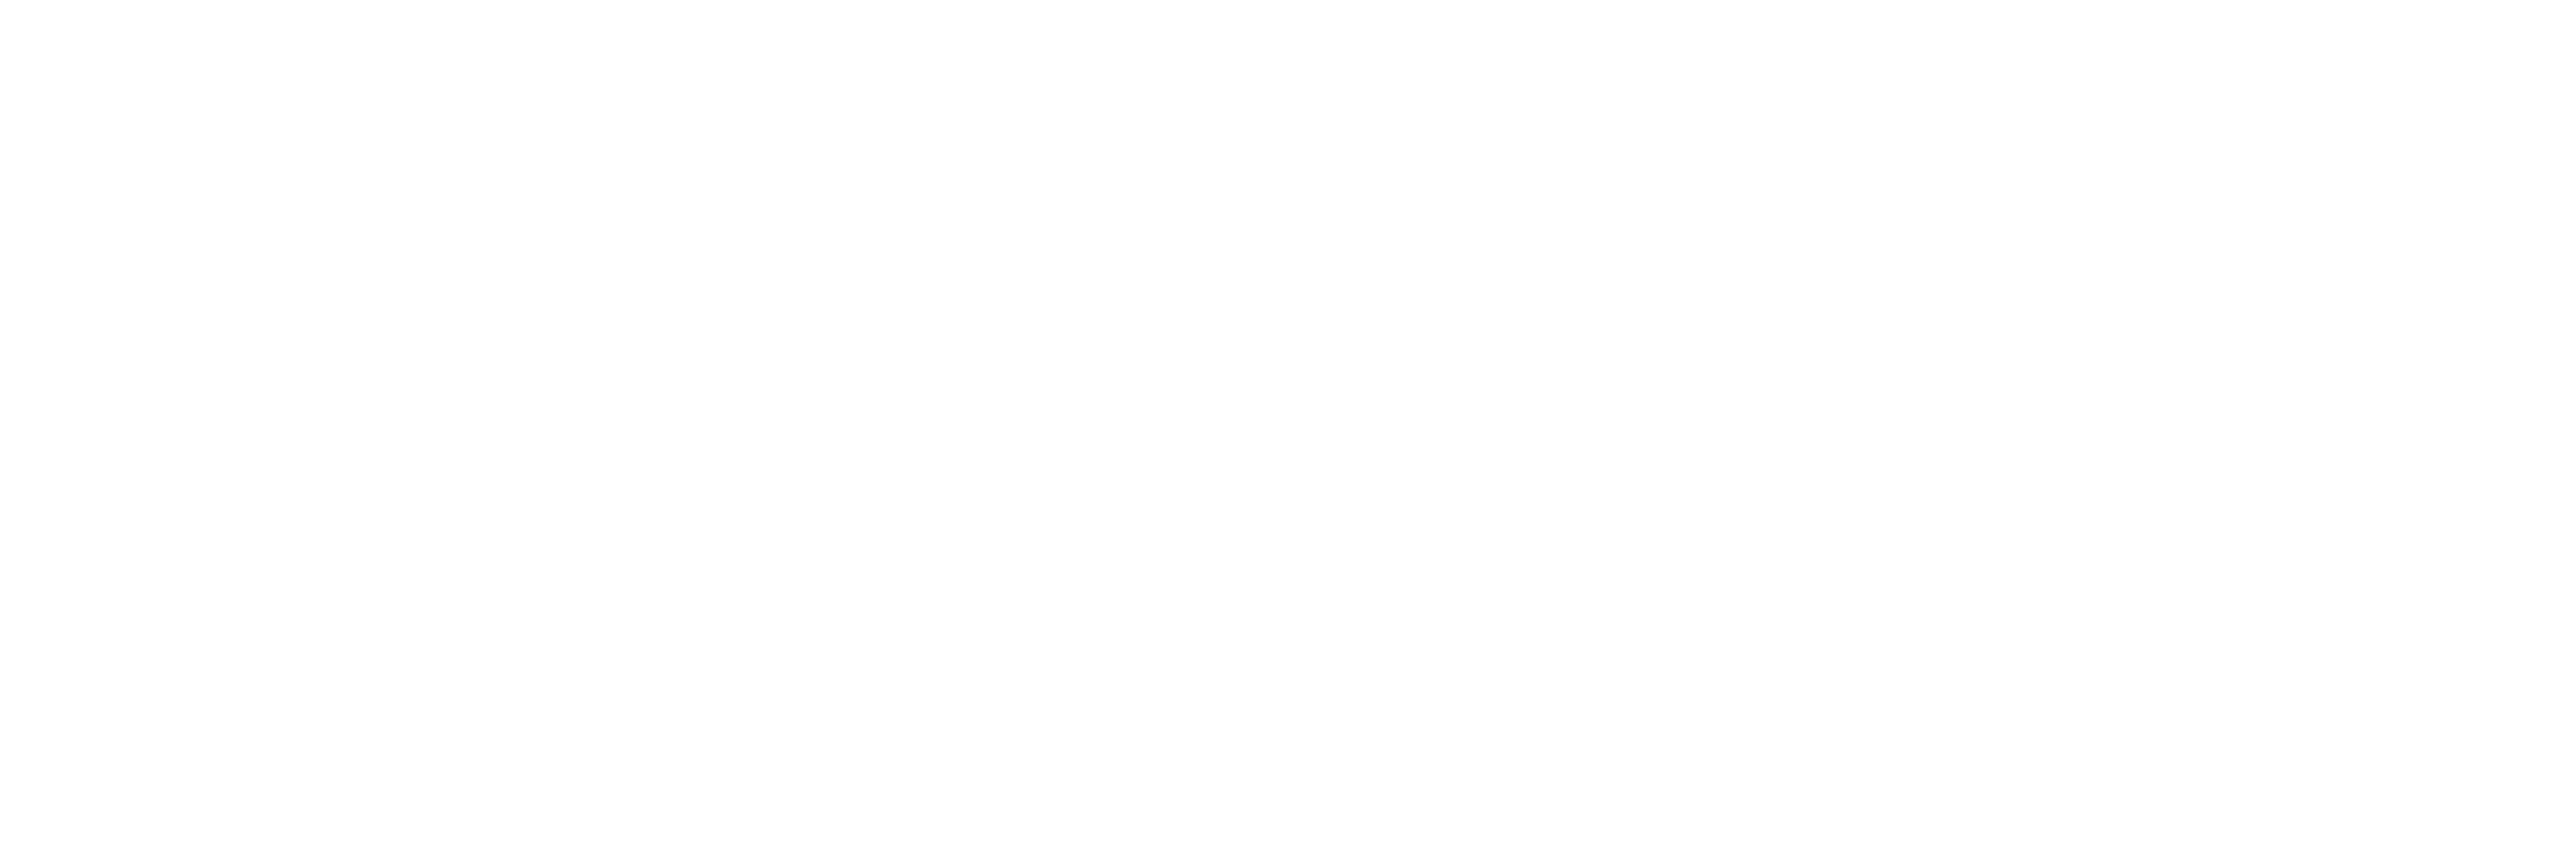 Expandify Marketing - Ecom Advertising Experts